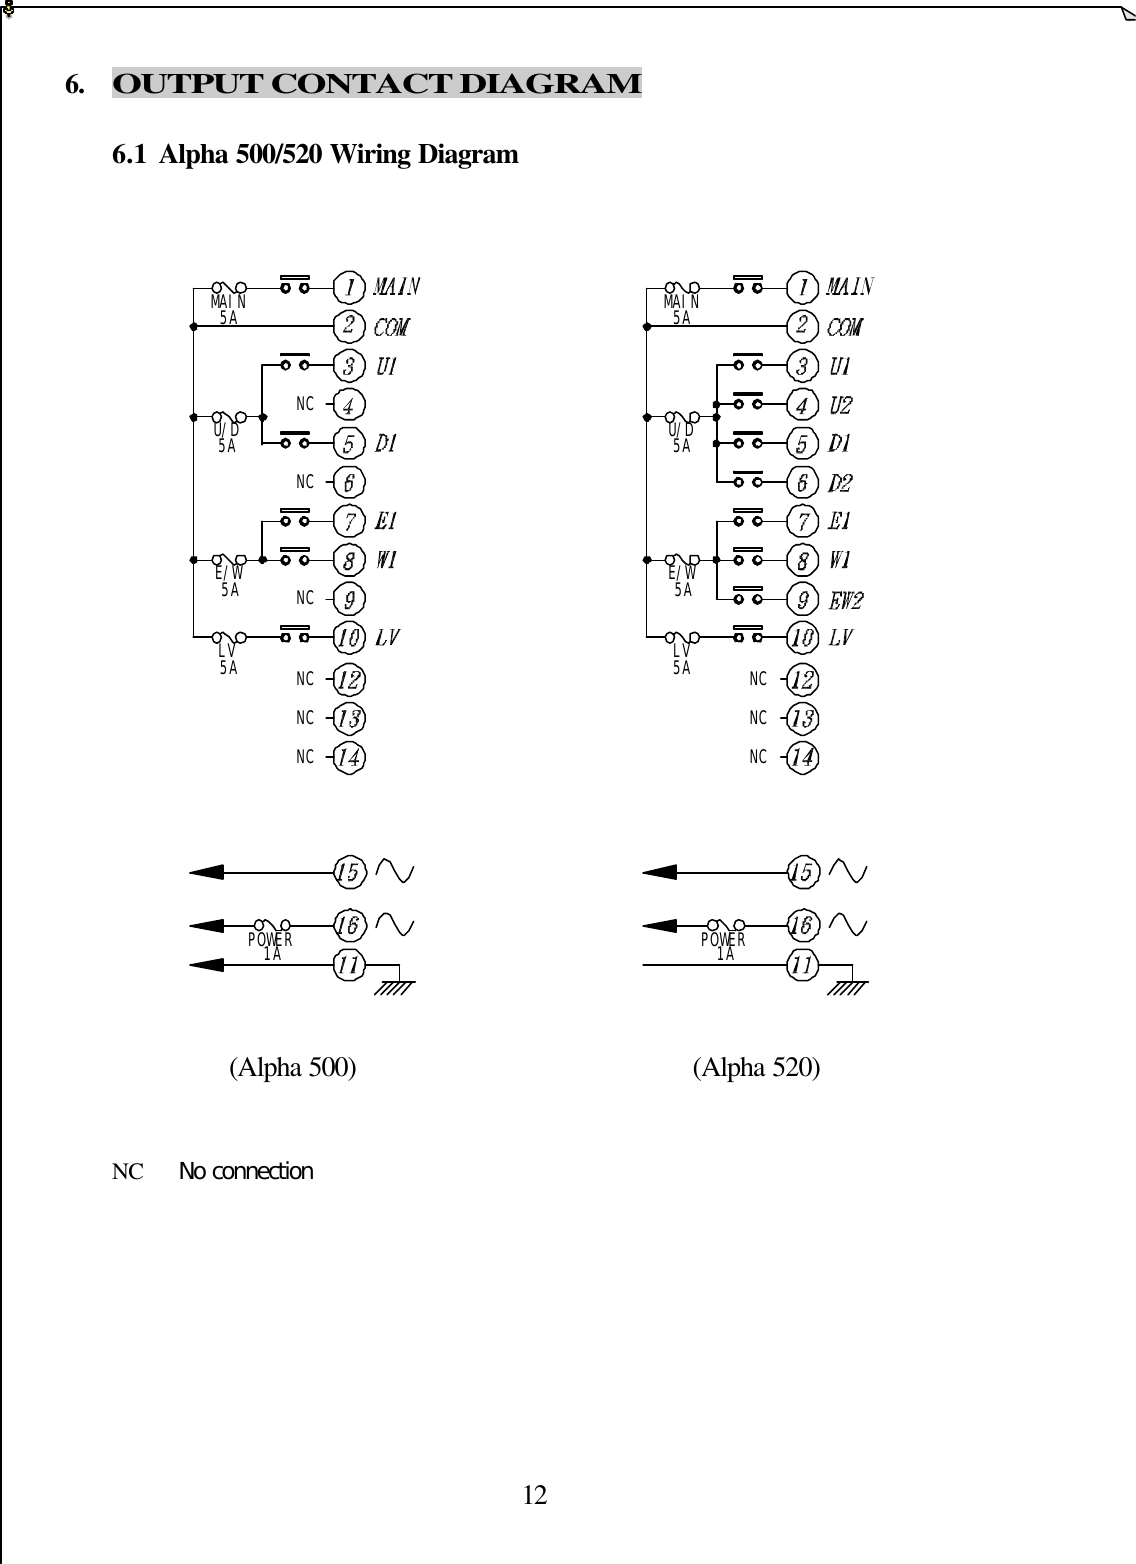  126. OUTPUT CONTACT DIAGRAM  6.1 Alpha 500/520 Wiring Diagram                    (Alpha 500)                                              (Alpha 520)   NC  No connection POWER1ALV5AE/W5AU/D5AMAIN5ANCNCNCPOWER1ALV5AE/W5AU/D5AMAIN5ANCNCNCNCNCNC